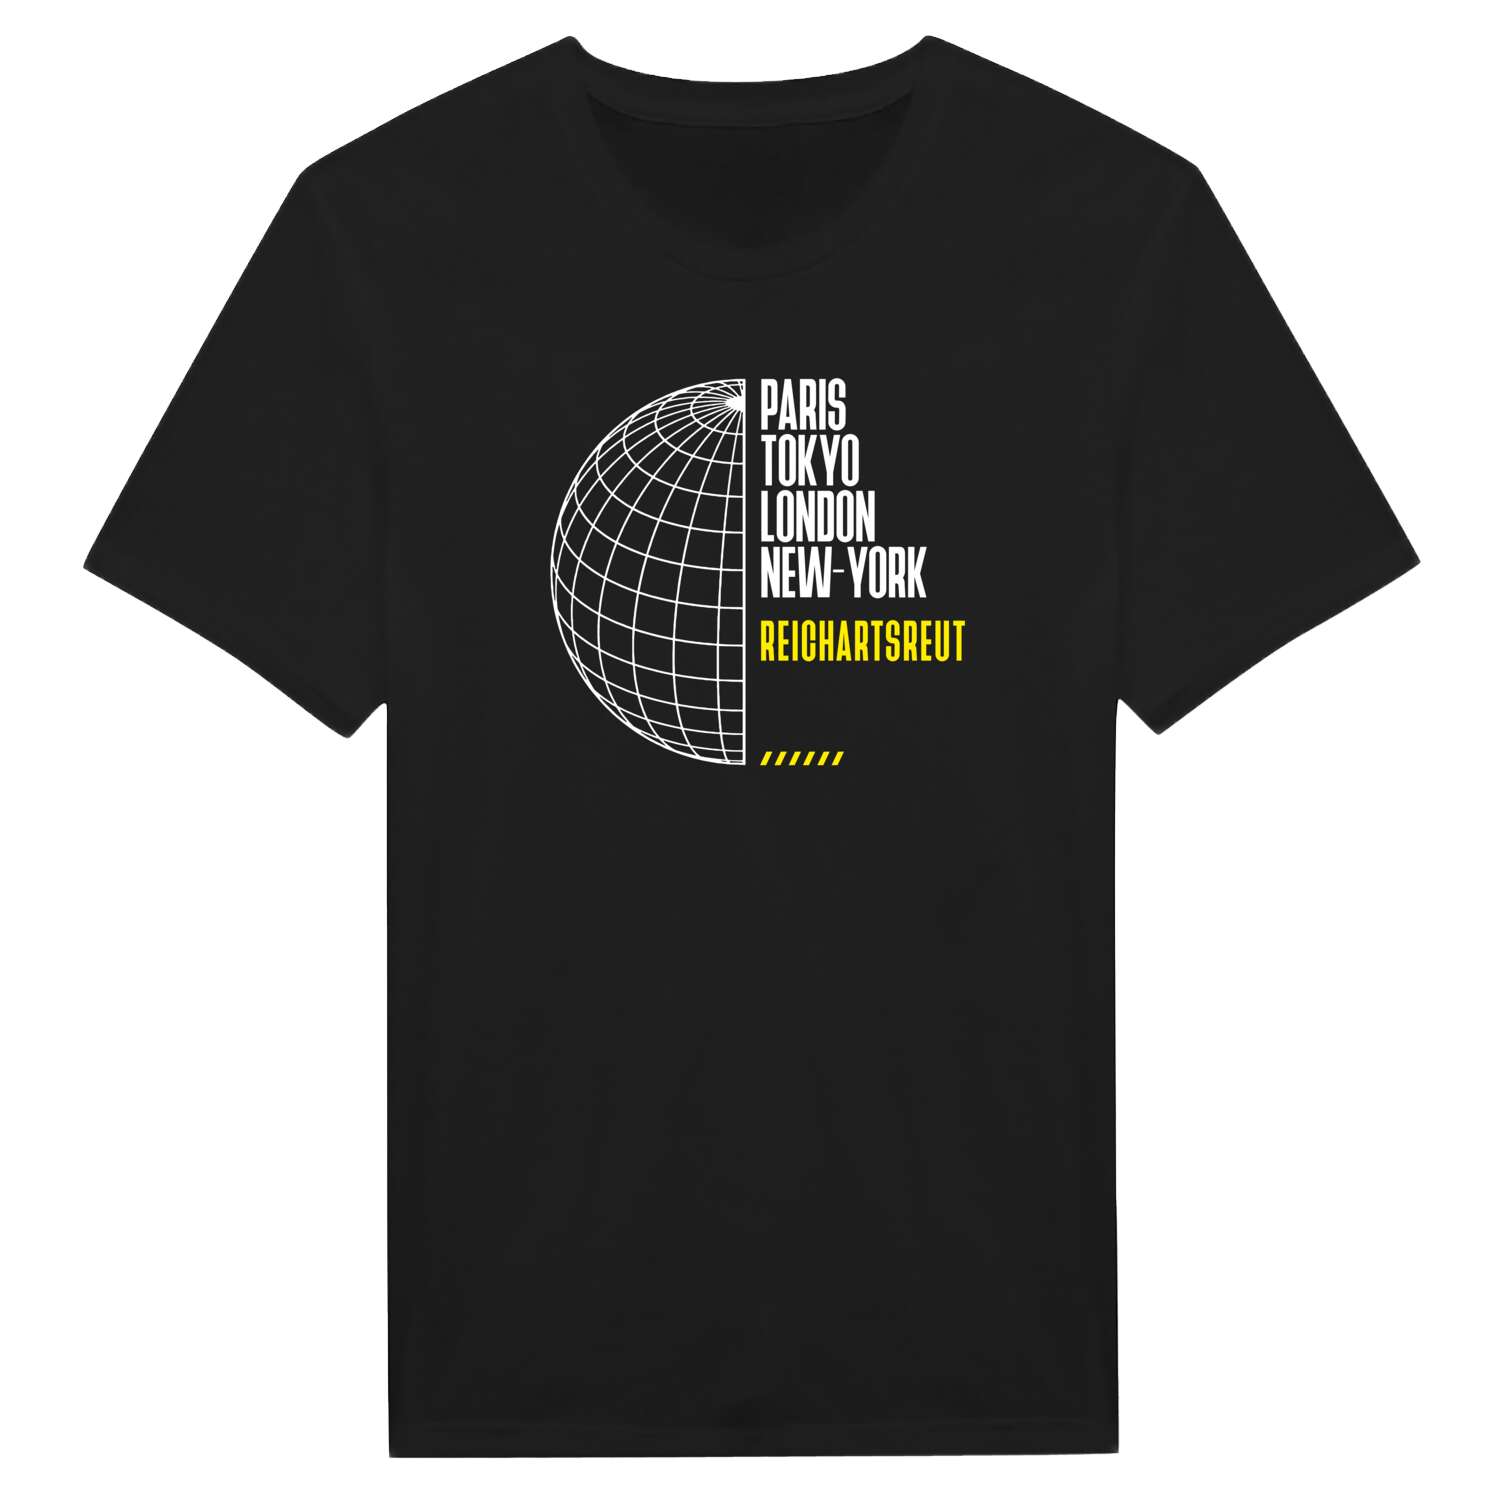 Reichartsreut T-Shirt »Paris Tokyo London«